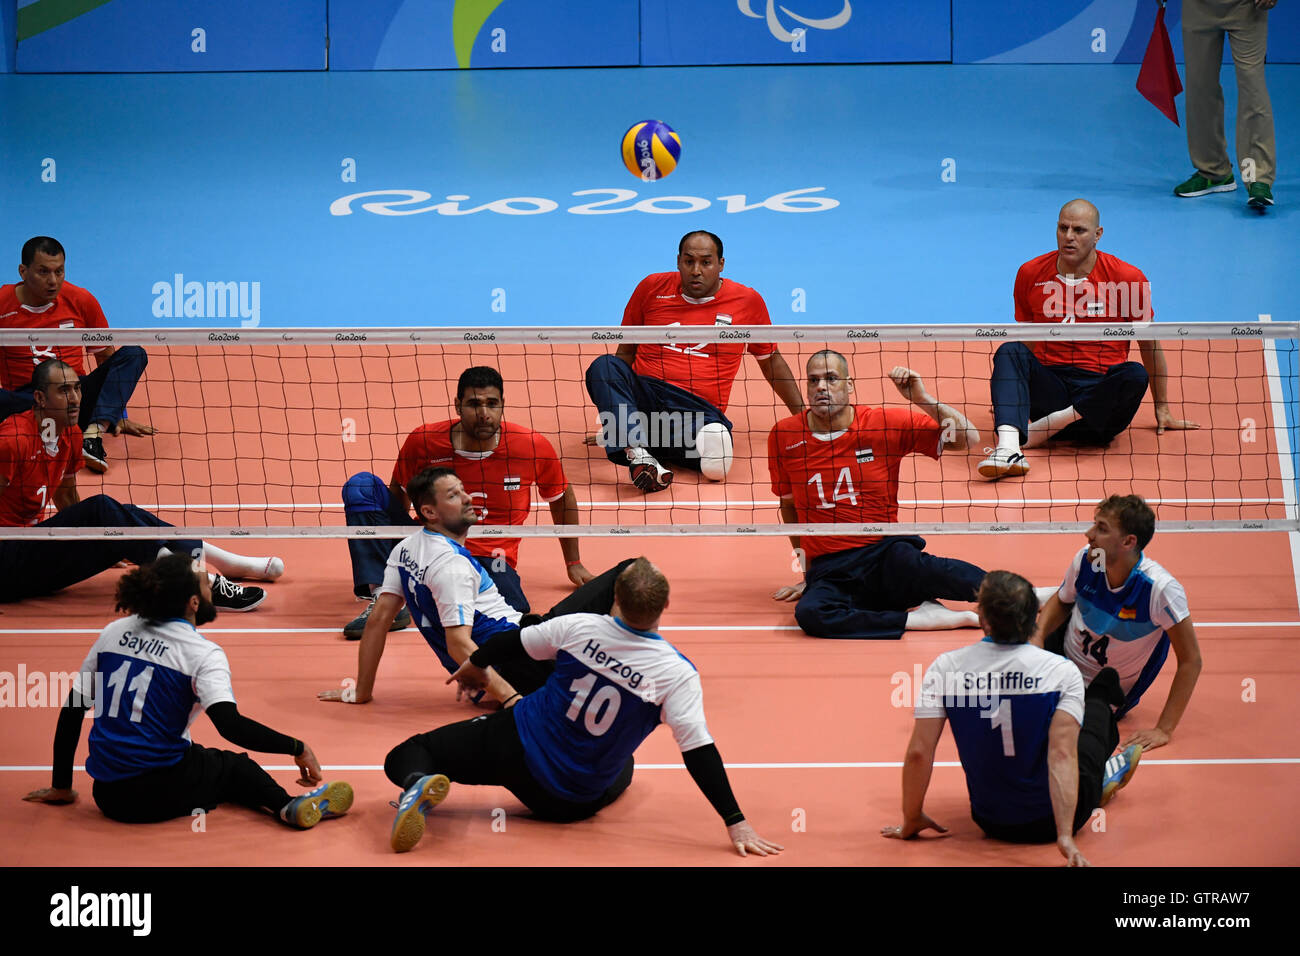 Germania (blu e bianco) riproduce l'Egitto in uomini seduti pallavolo al Rio 2016 Paralimpiadi. L'Egitto è venuto da dietro per vincere. Foto Stock